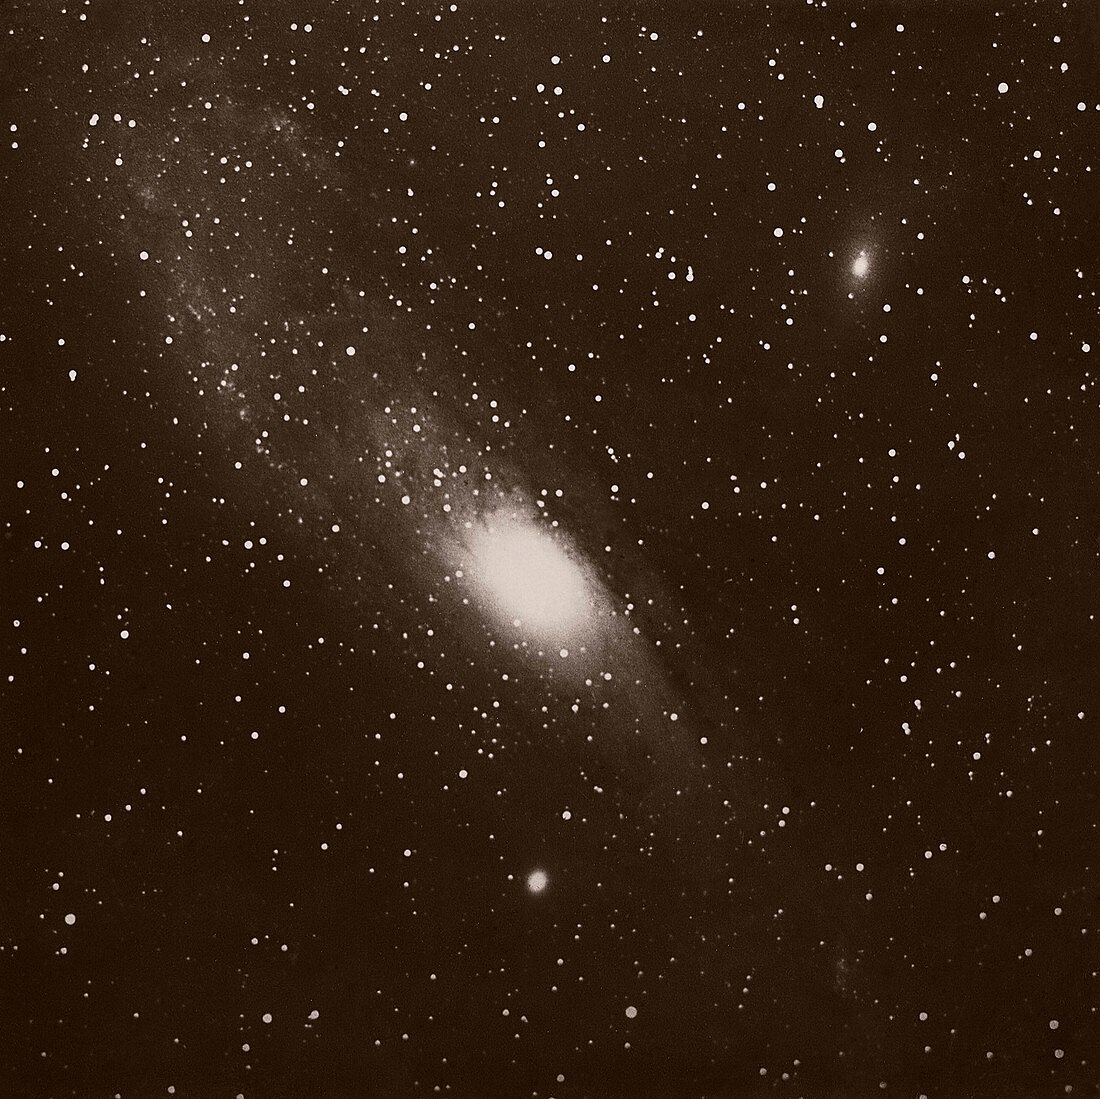 Andromeda Galaxy, 1888